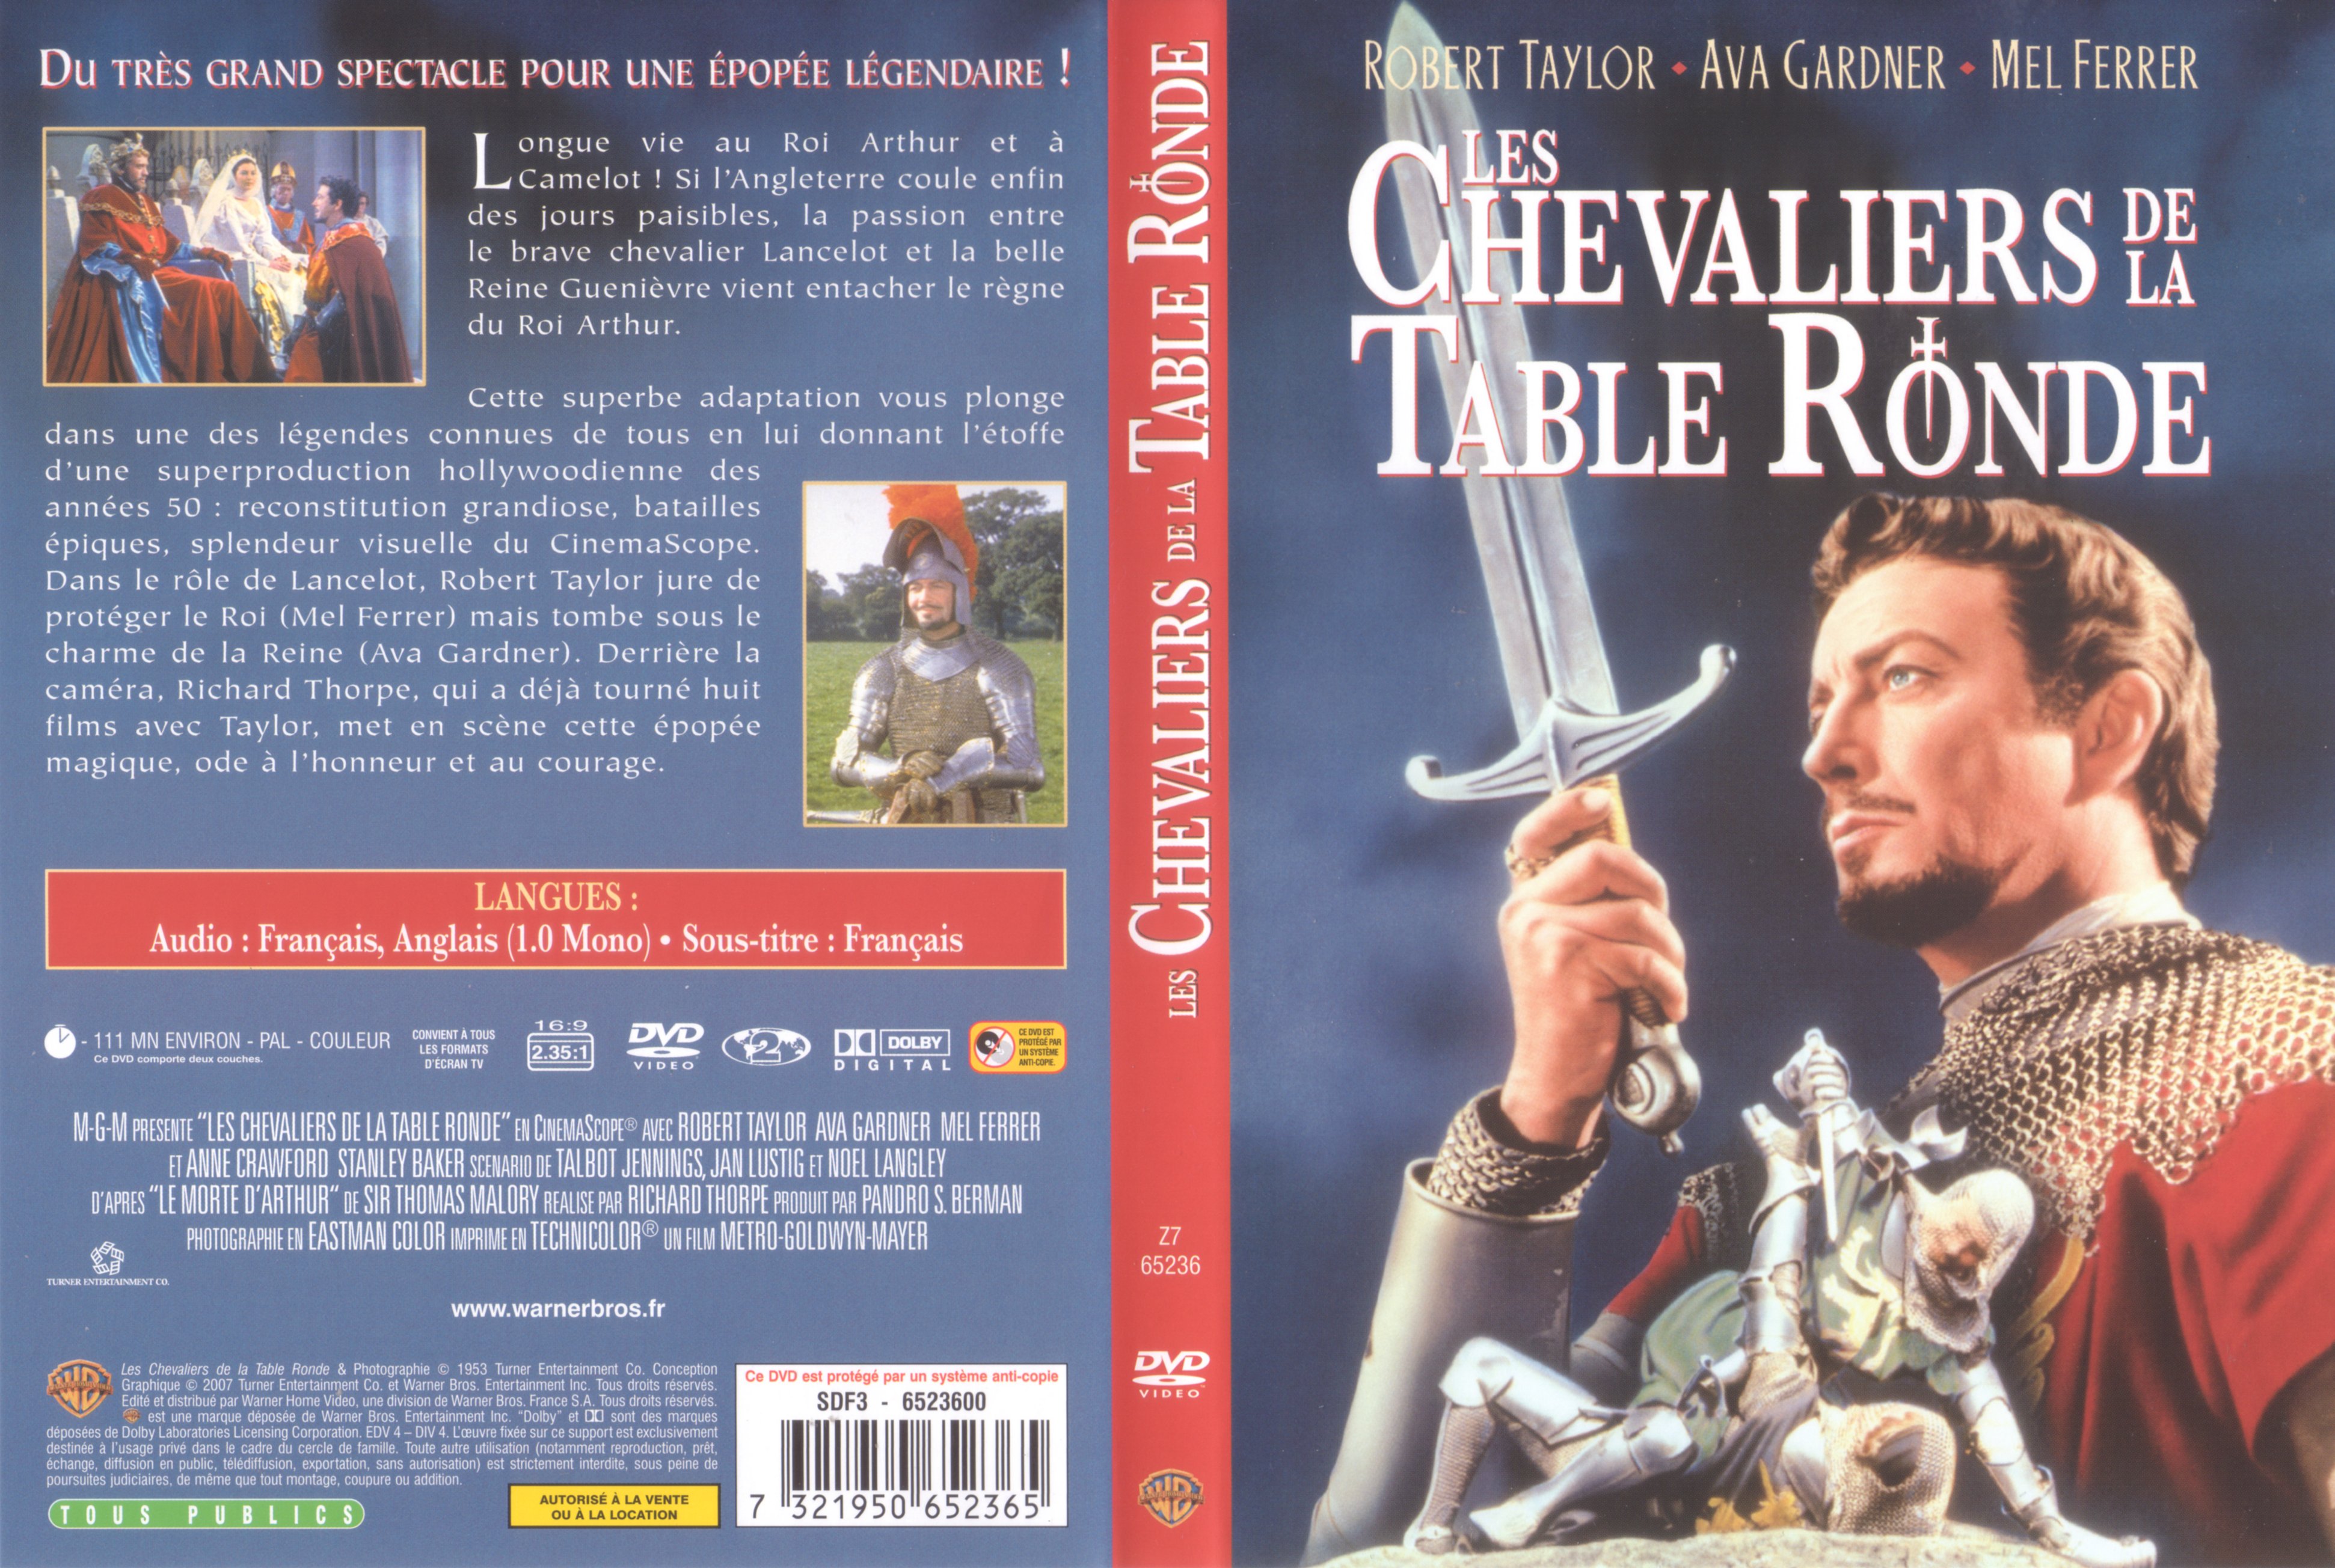 Jaquette DVD Les chevaliers de la table ronde